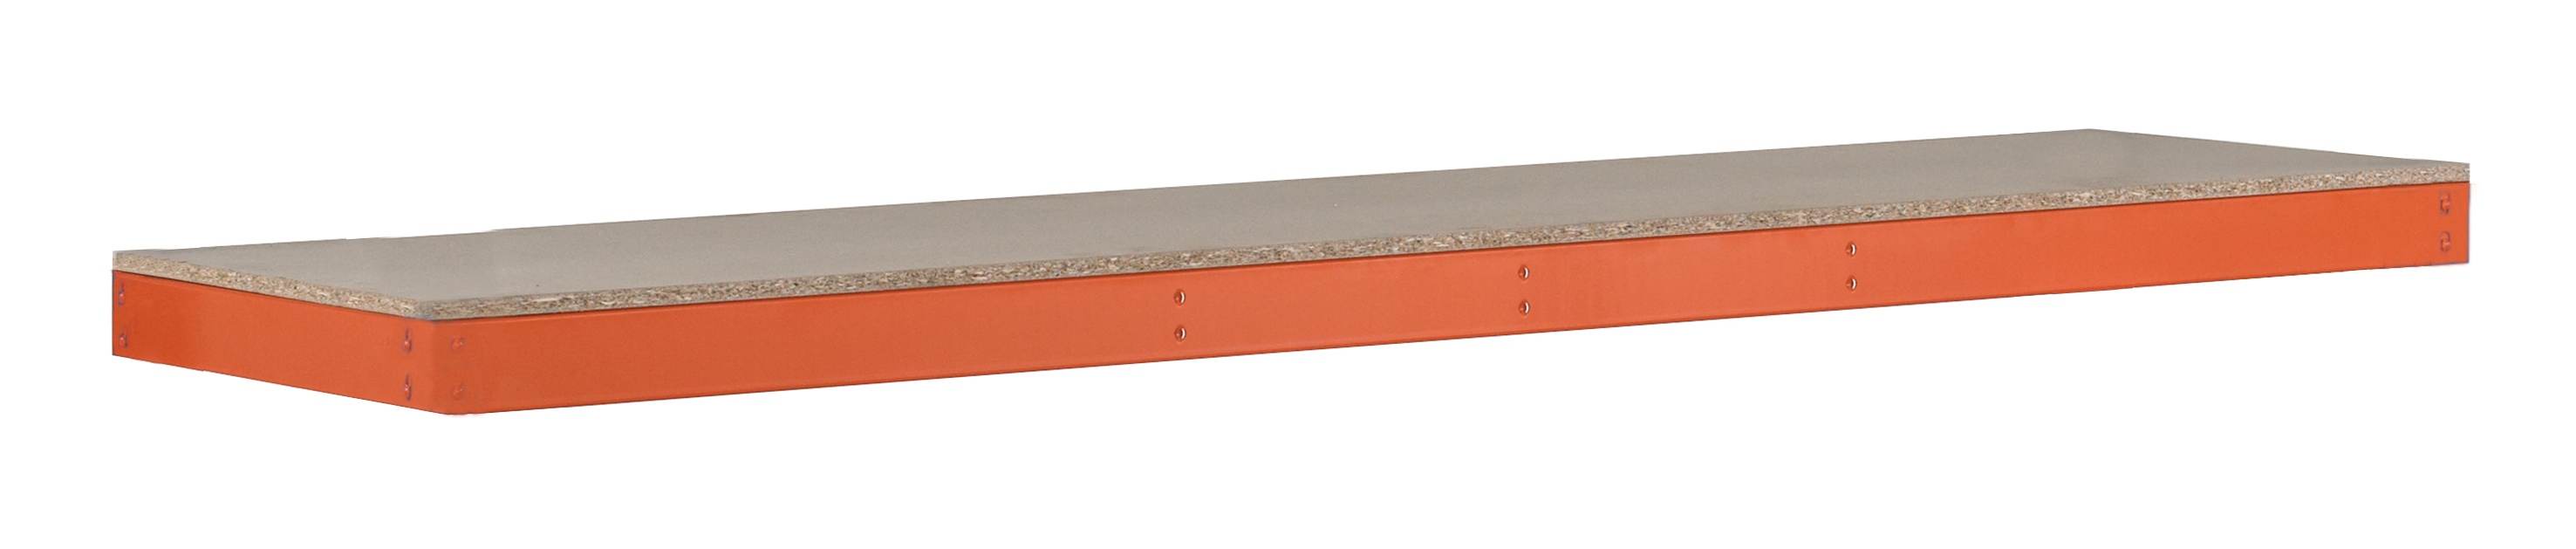 Zusatzebene mit Spanplatten, Z1, 1841 x 621 mm, orange/verzinkt, Fachlast 610 kg